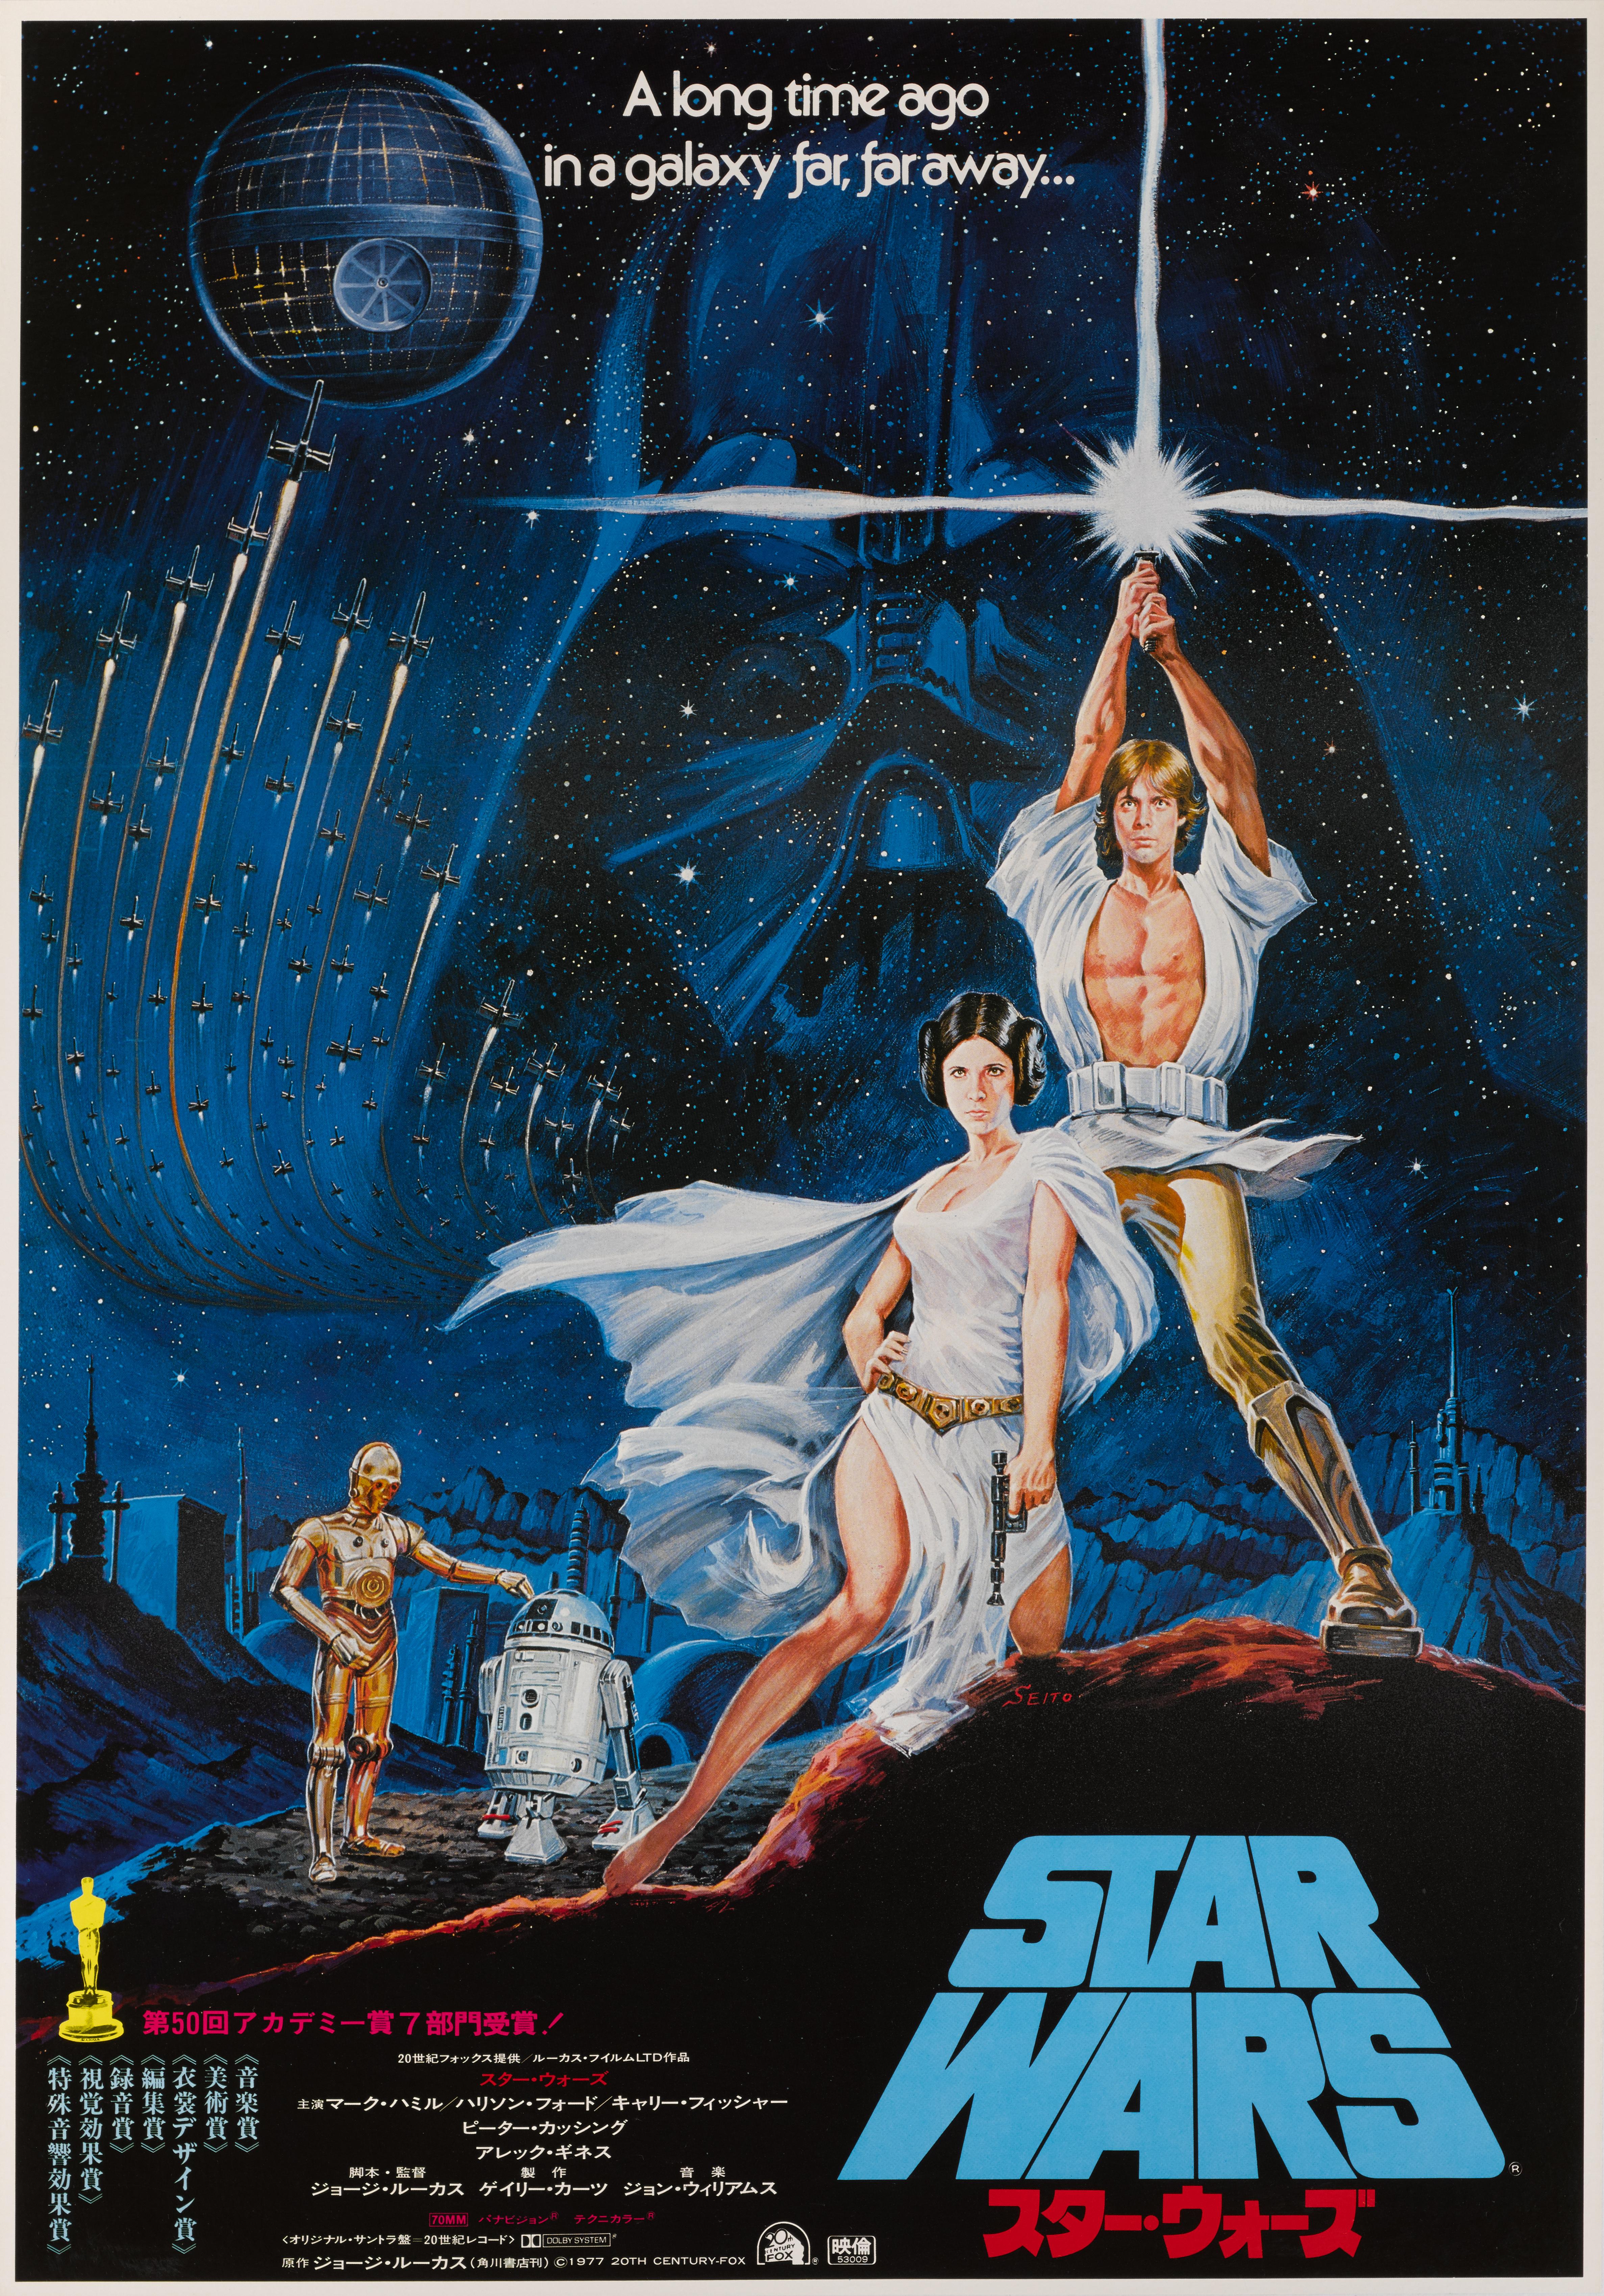 Originales japanisches Filmplakat für Star Wars 1977.
Dieses Plakat ist ungefaltet und Erhaltung Leinen zurück in fast neuwertigem Zustand. Das Kunstwerk auf diesem Plakat stammt von Seito (Datum unbekannt)
Regie führte George Lucas, die Hauptrollen